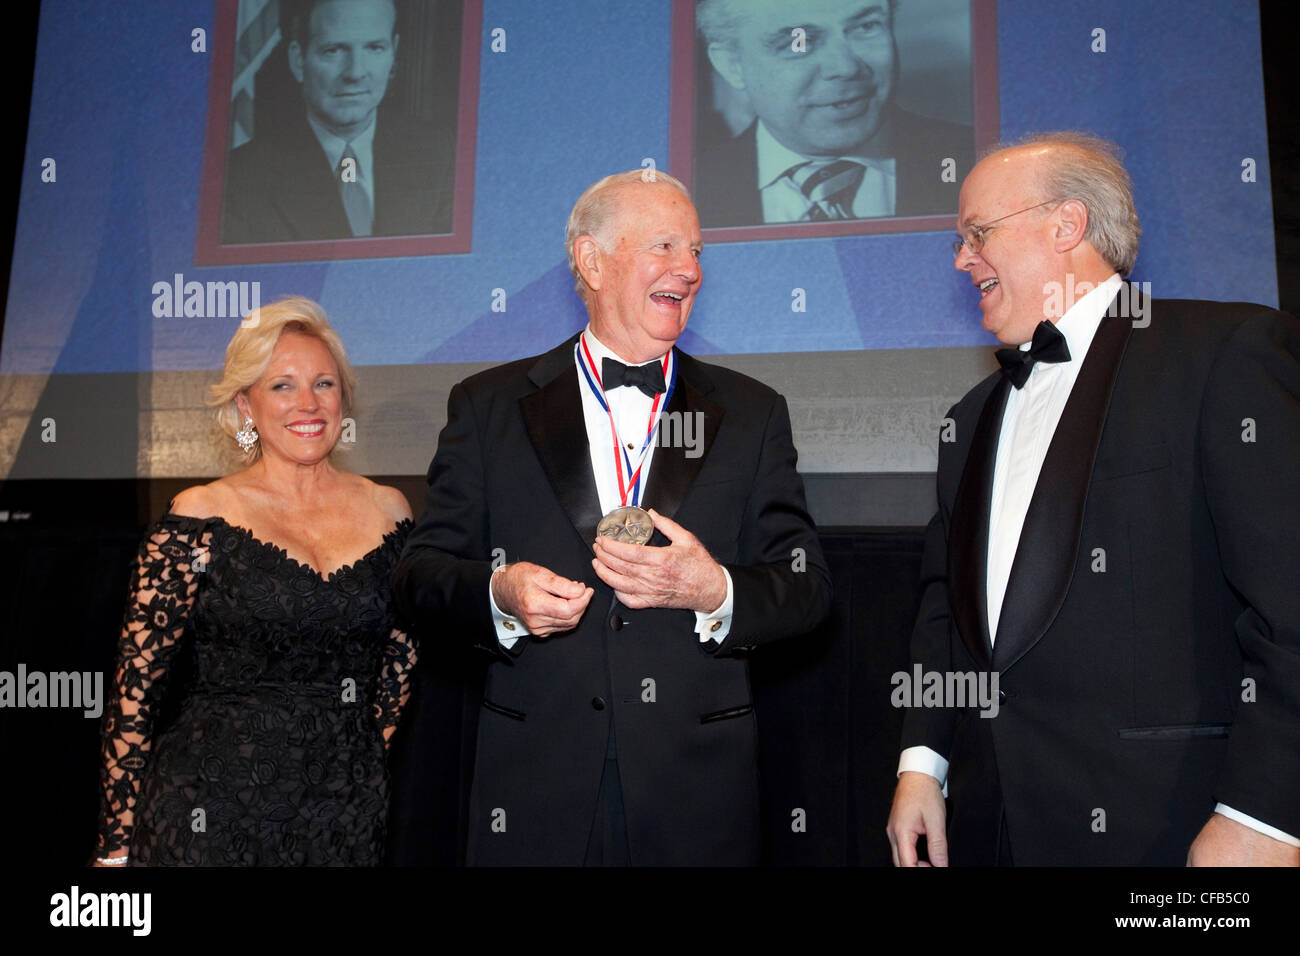 James A. Baker III de Houston, diplomático y estadista servido bajo tres presidentes de Estados Unidos, obtiene el premio tejano legendario Foto de stock